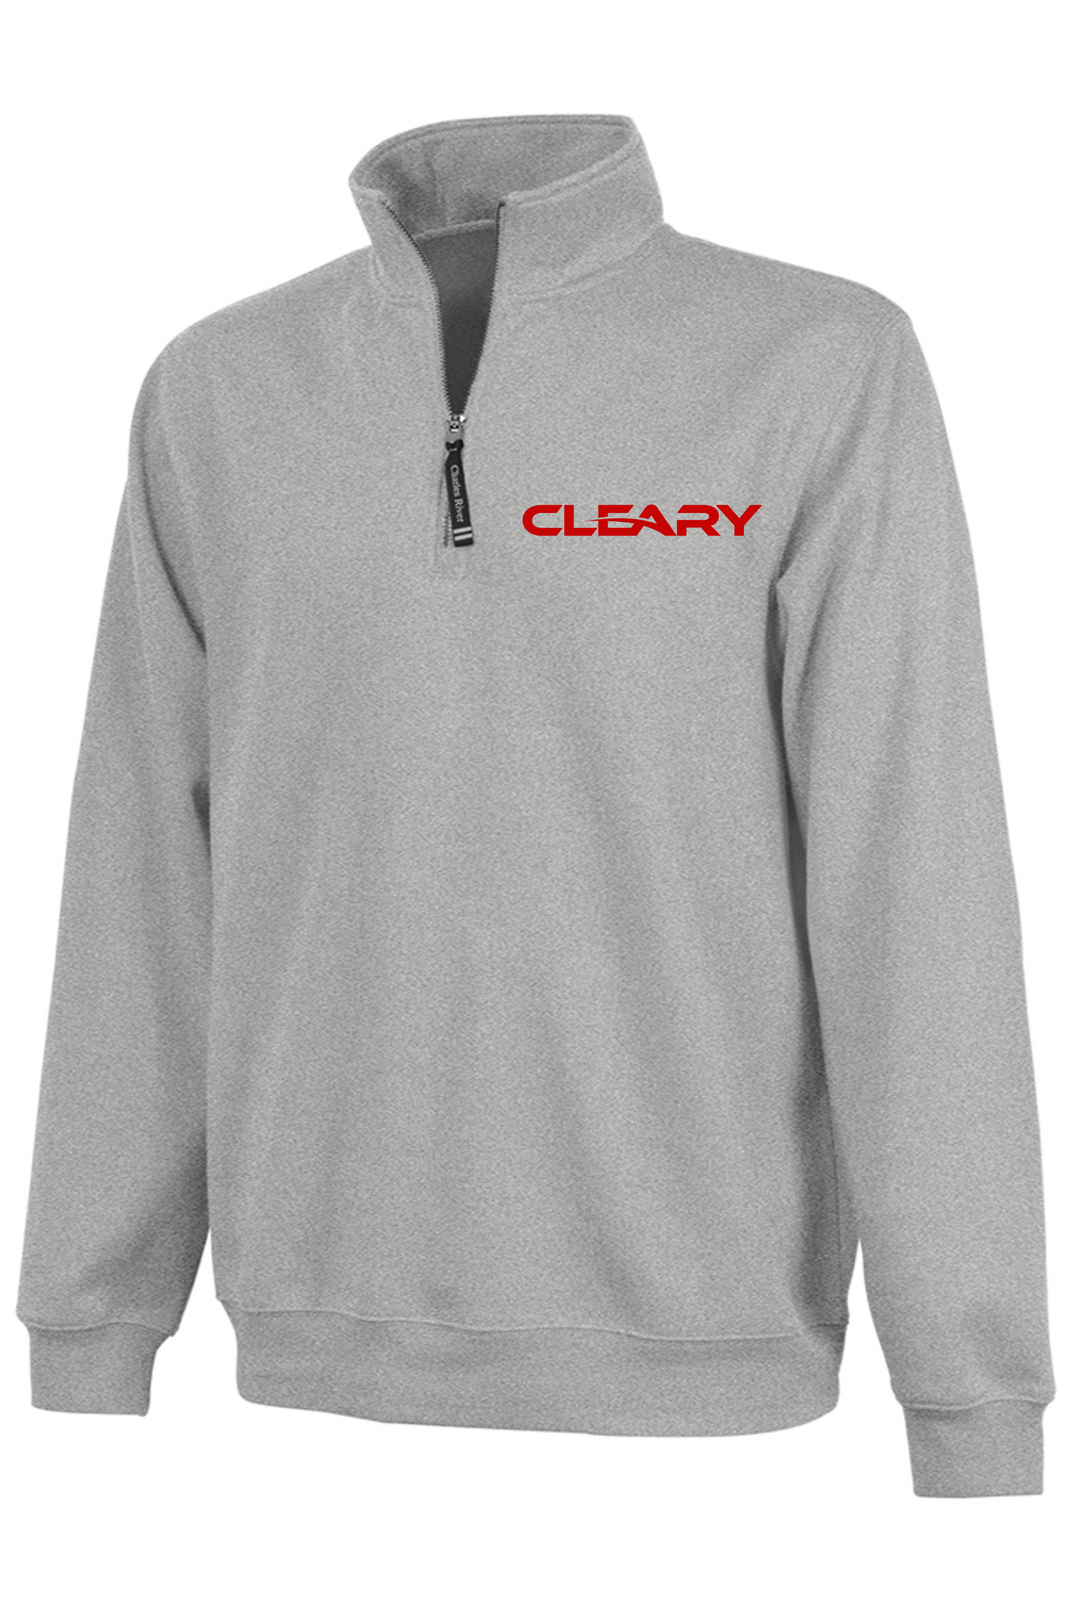 Cleary's Crosswind Quarter Zip Sweatshirt Oxford Heather